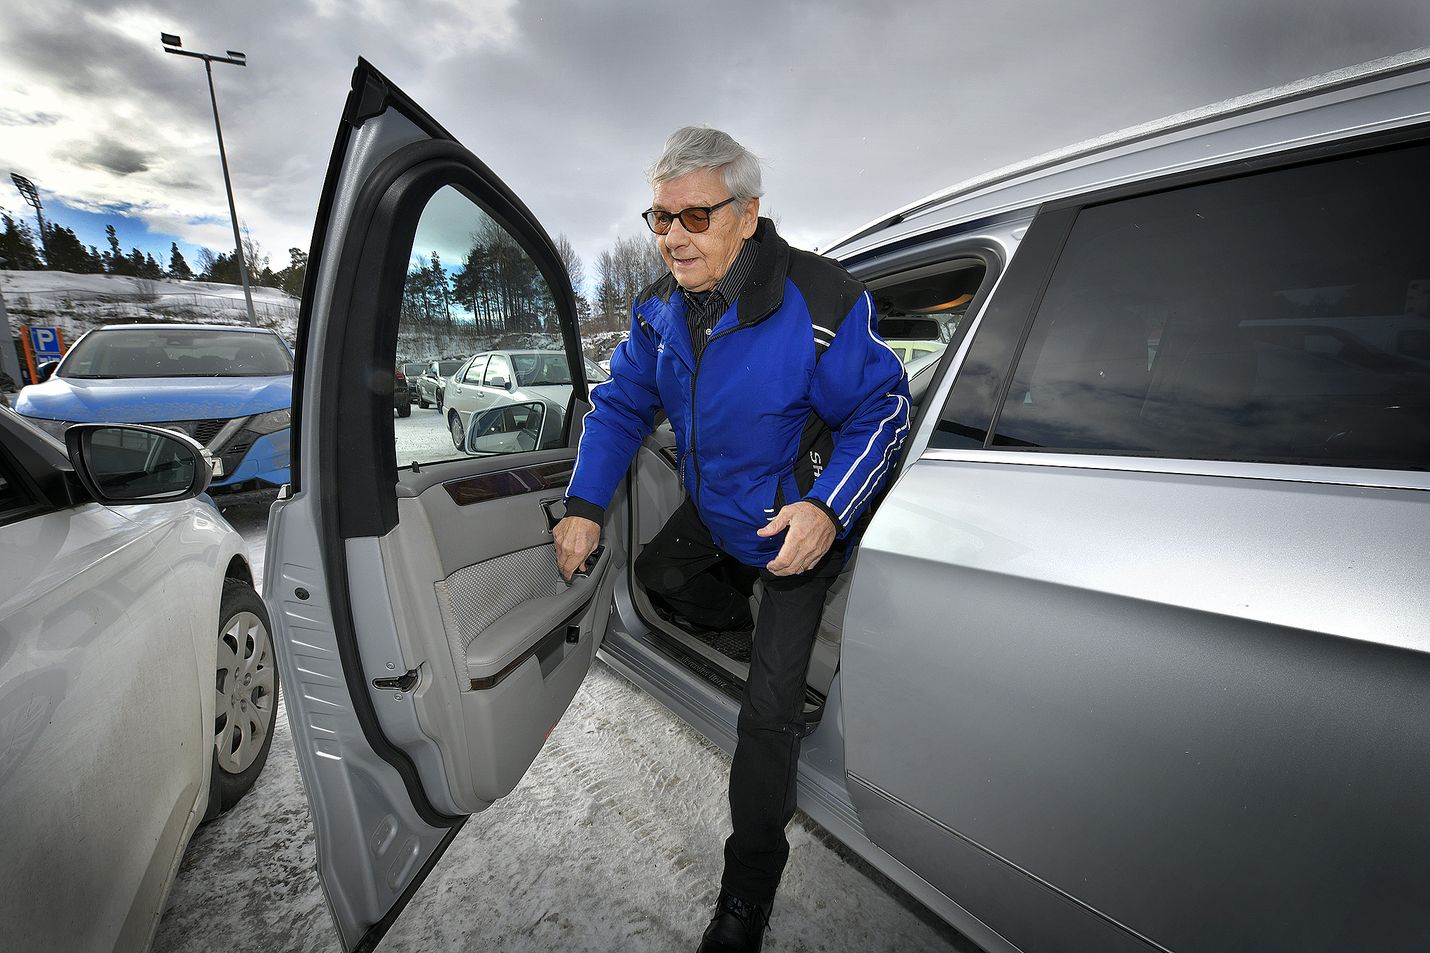 Raumalainen Pertti Helkiö on autoillut jo 60 vuoden ajan. Tällä hetkellä Helkiö käyttää autoa tarpeen mukaan, pääasiassa kauppareissuilla. Hän suosittelee monelle ikääntyneelle automaattivaihteita, sillä se vapauttaa huomion paremmin liikenteeseen. 